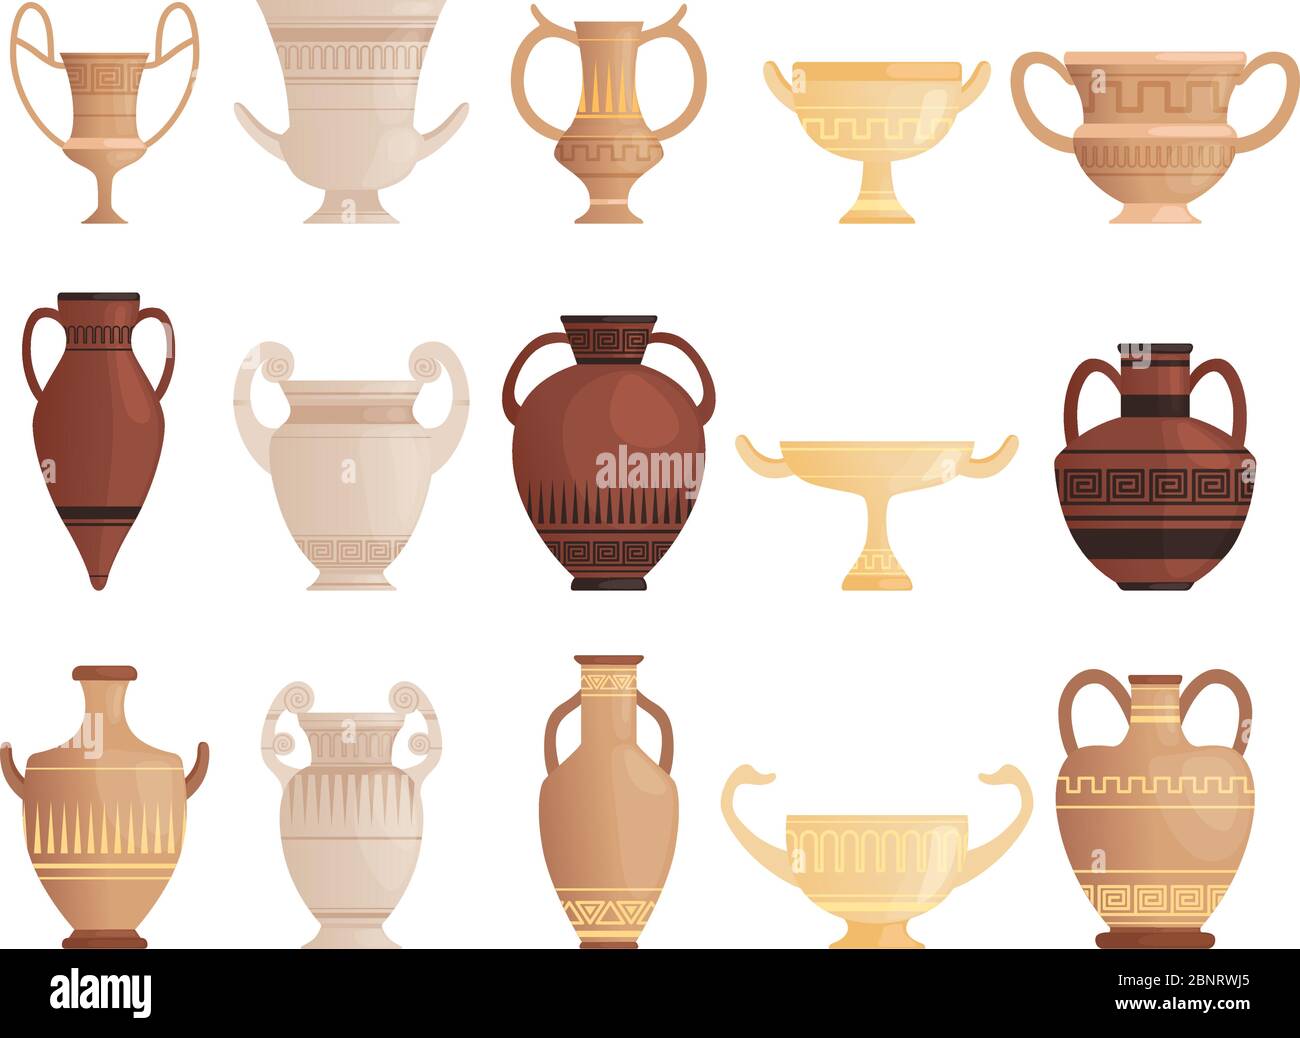 Antiguo buque antiguo. Tazas de la jarra de arcilla y ánforas con los patrones de cerámica jarra antigua cuadros vectoriales Ilustración del Vector